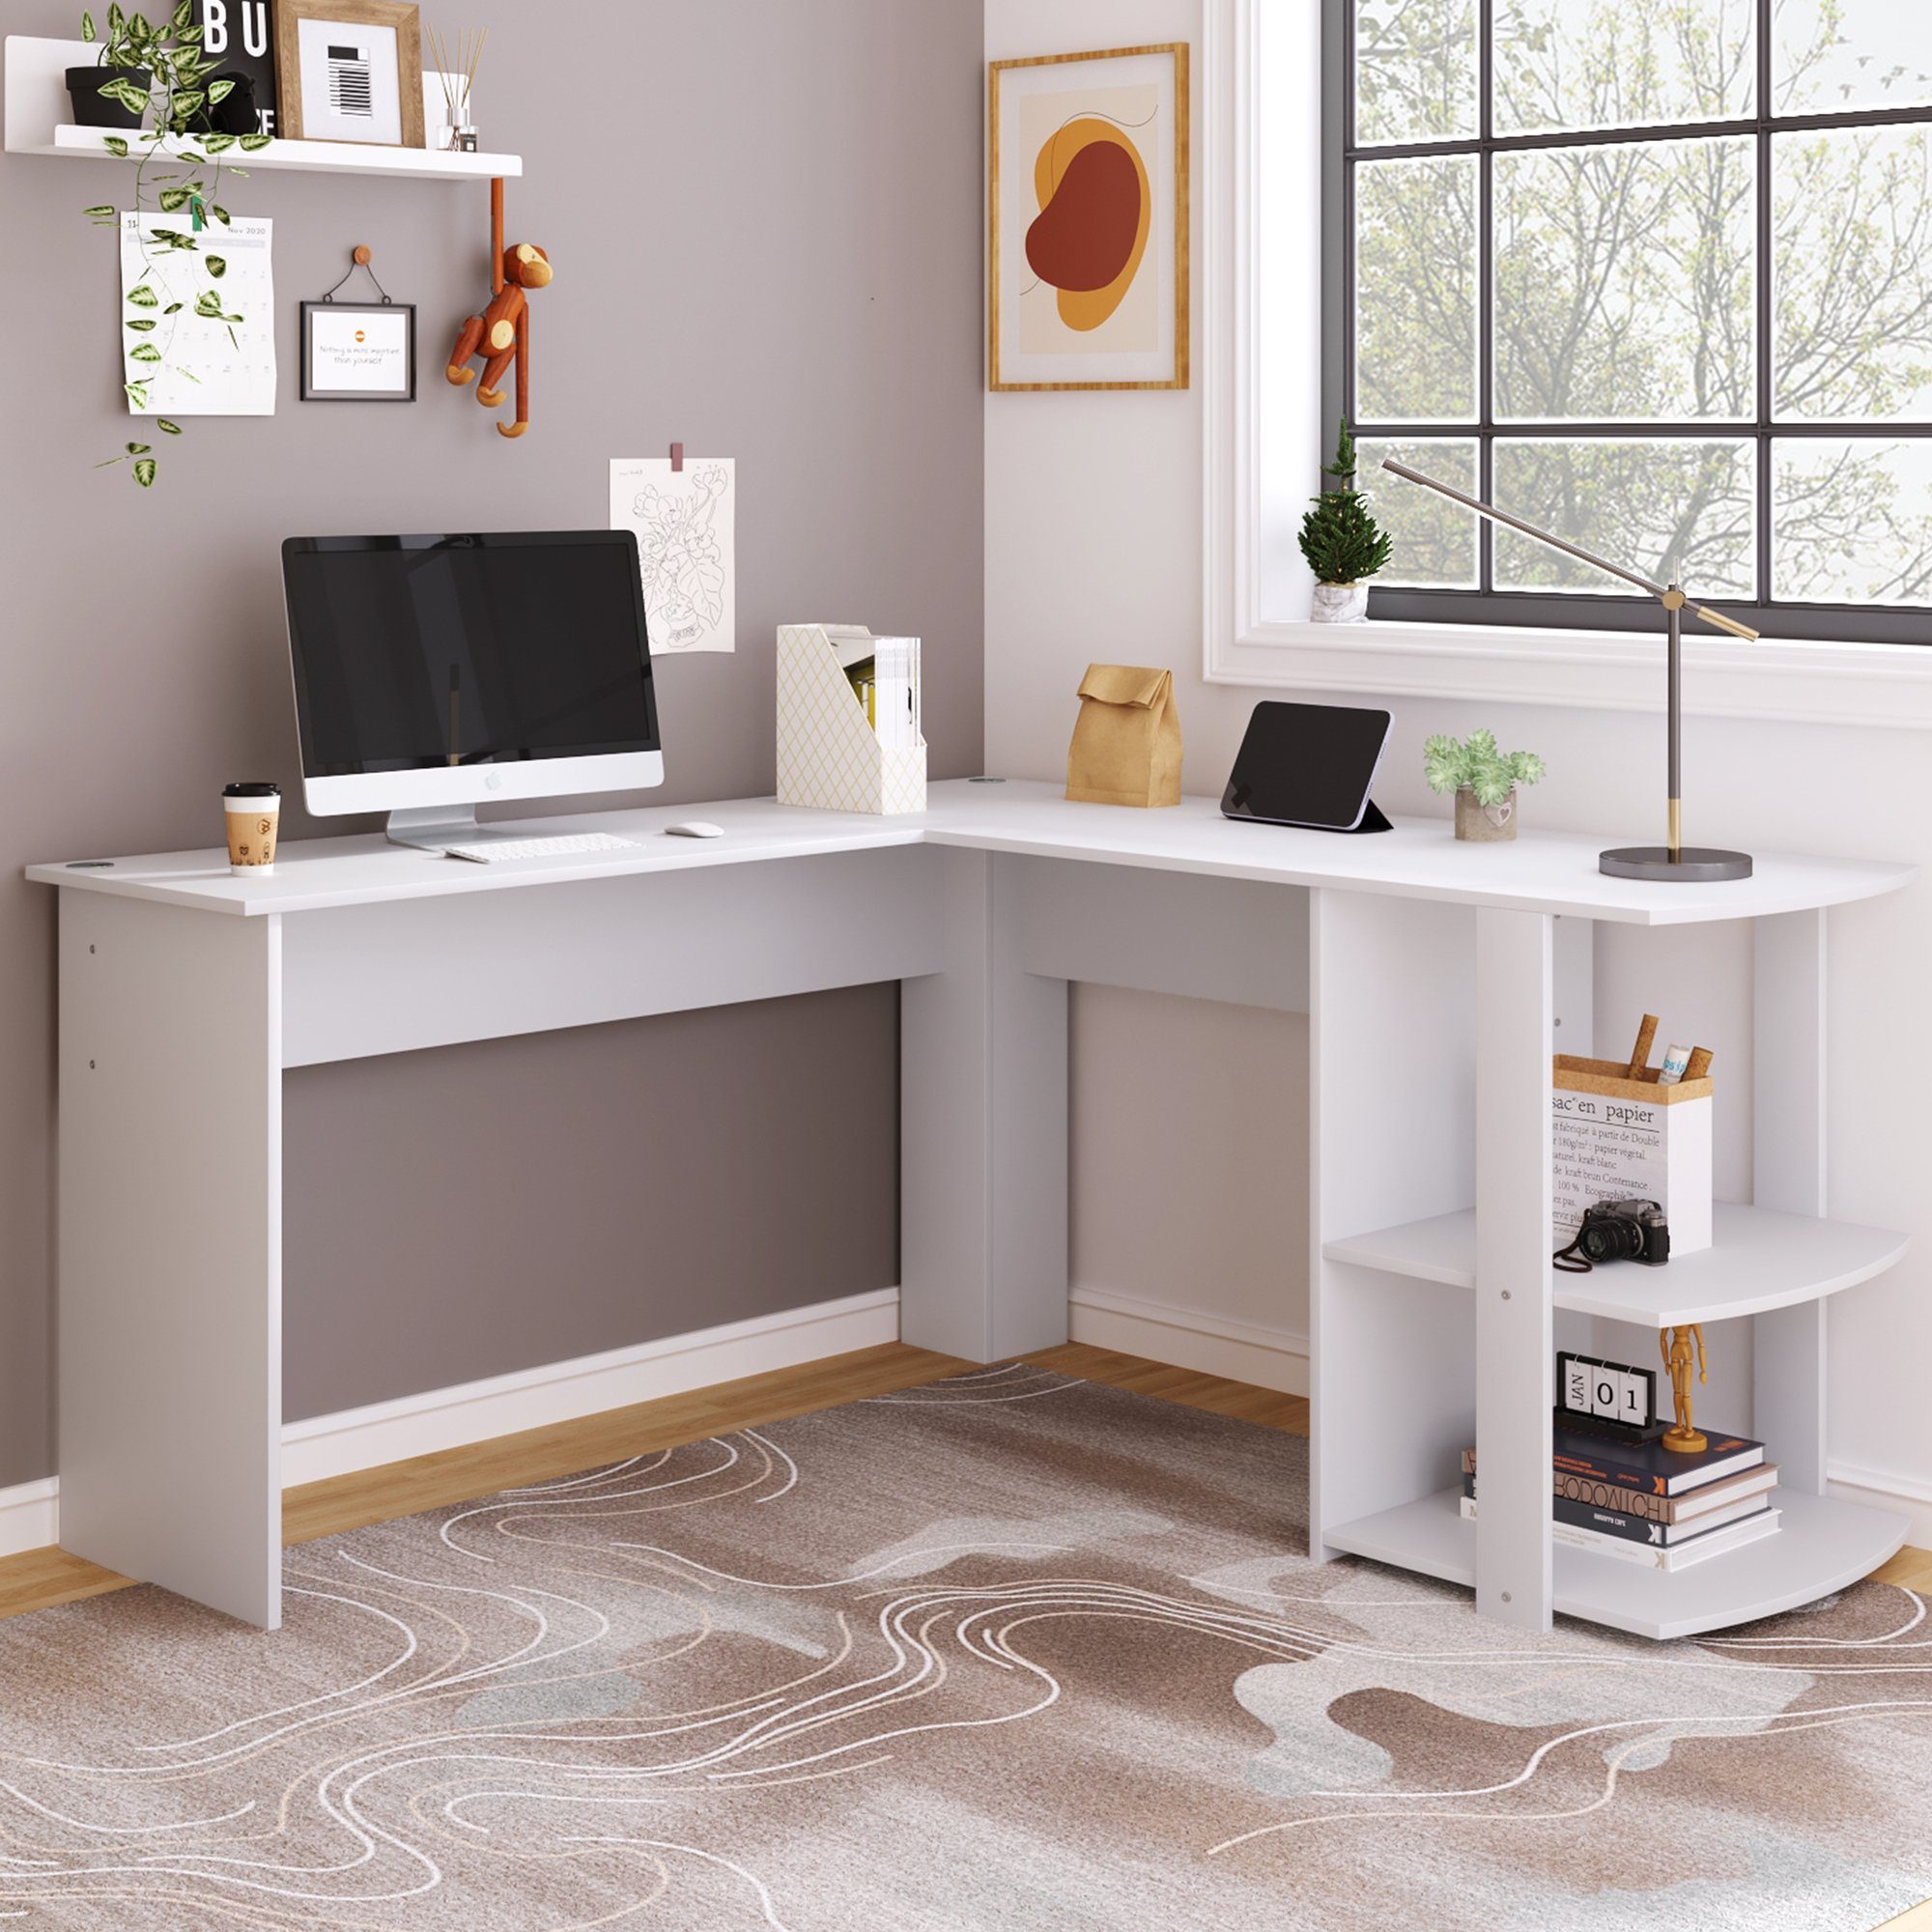 SOFTWEARY Eckschreibtisch Schreibtisch, Bürotisch, Computertisch mit 2 Ablagen, L-förmig weiß